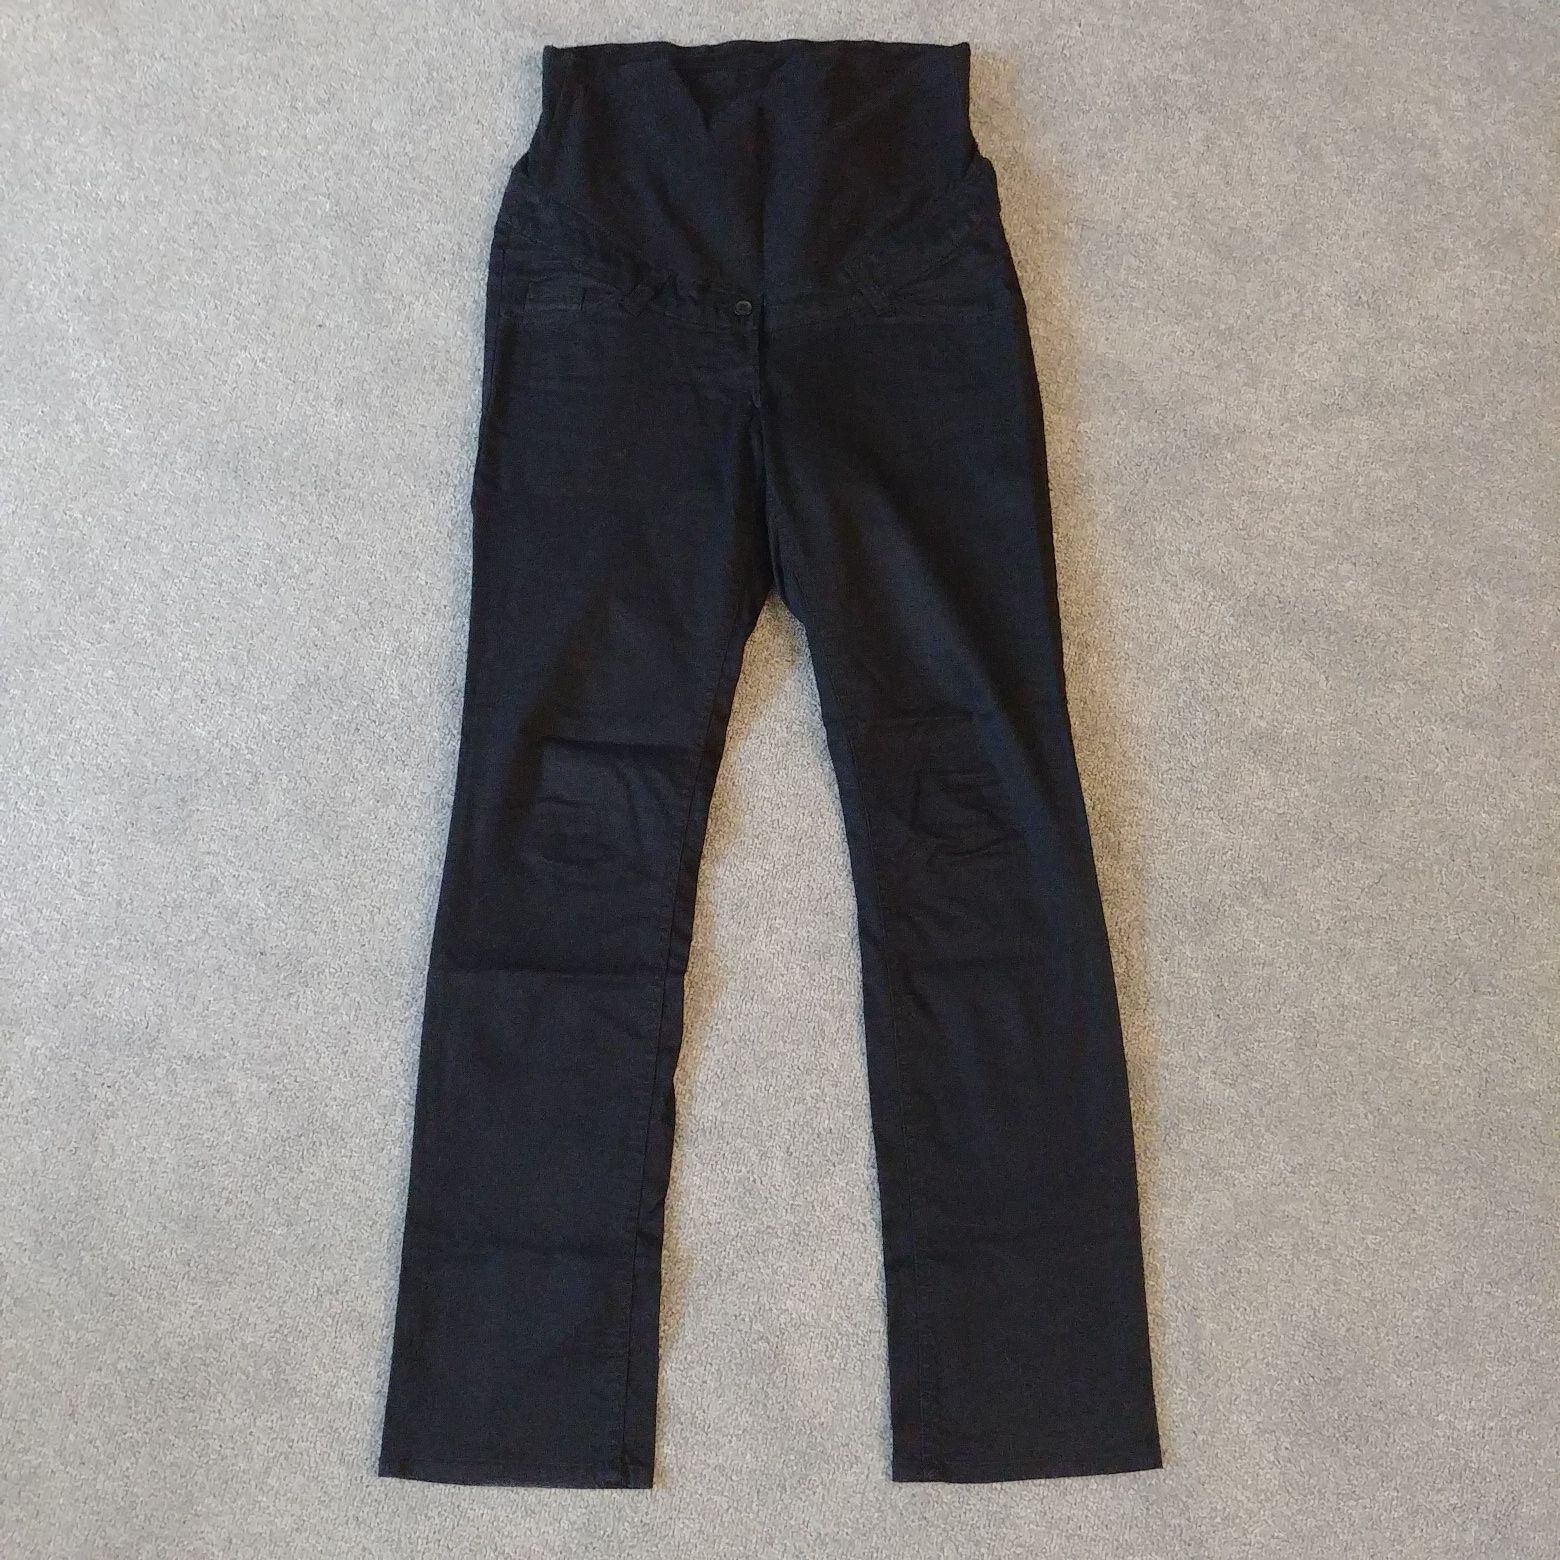 Spodnie ciążowe H&M czarne r.M 38